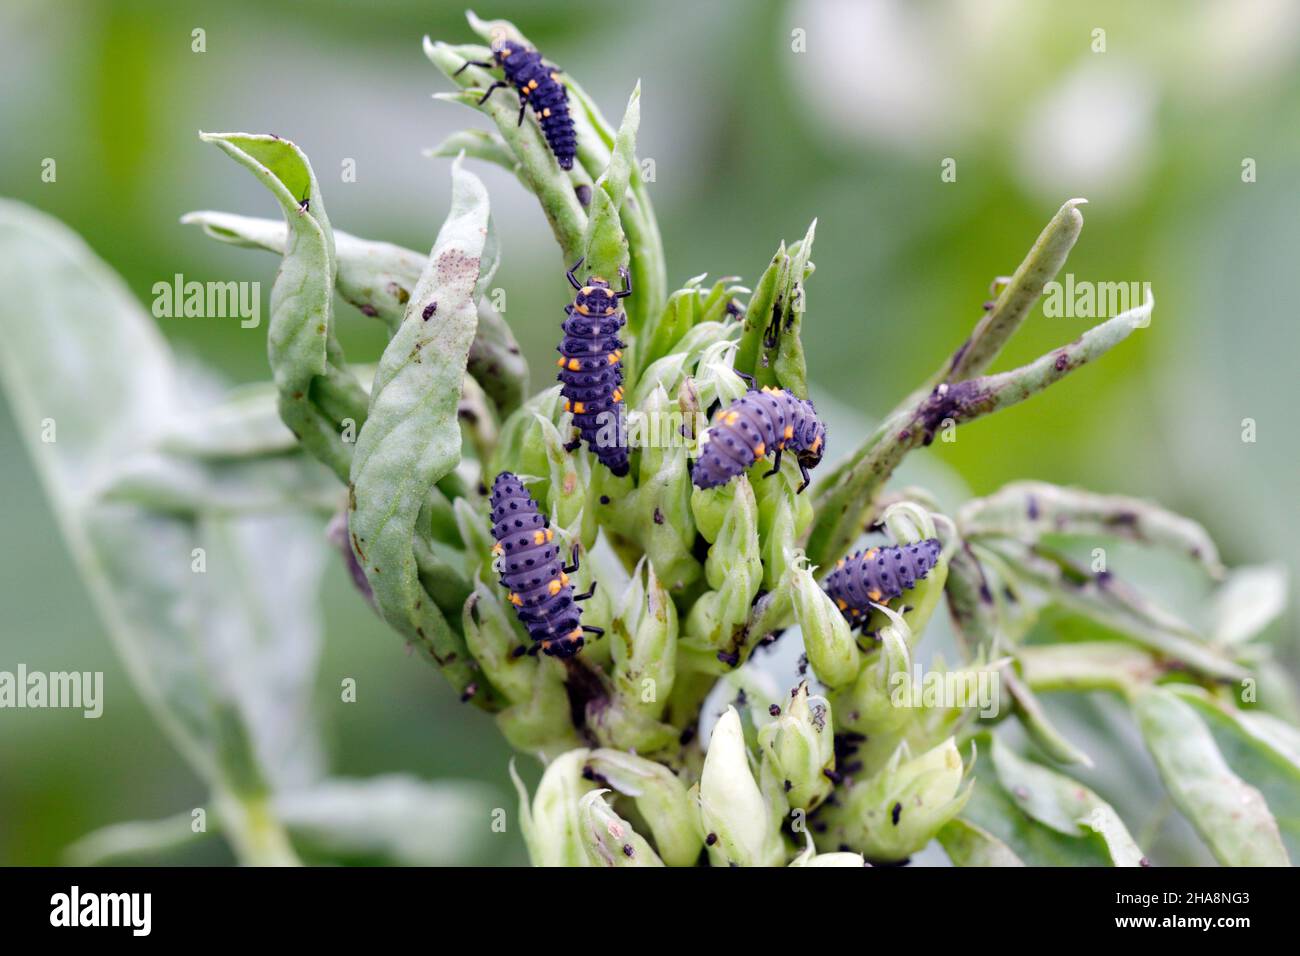 Die schwarzen Bohnenaphiden, Aphisfabae, auf Faba-Bohnenpflanzen und ihrem natürlichen Feind - dem Marienkäfer mit sieben Flecken - Coccinella septempunctata. Stockfoto